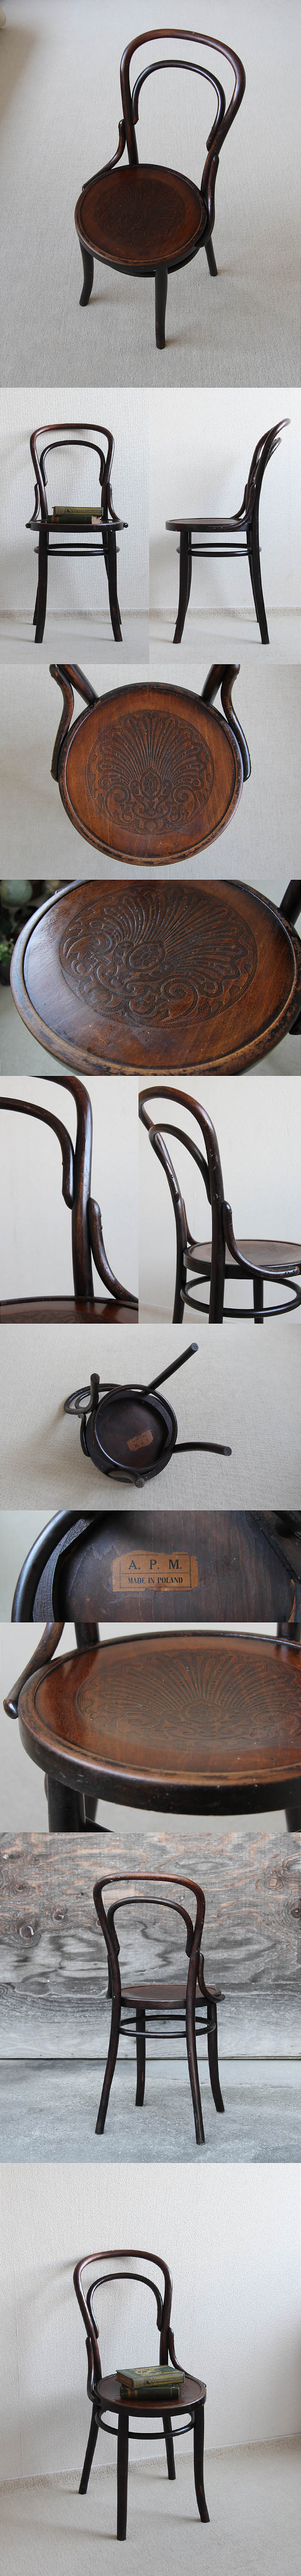 ポーランド アンティーク ベントウッドチェア 曲げ木 木製椅子 花柄型押し装飾 家具「APM社製」P-009